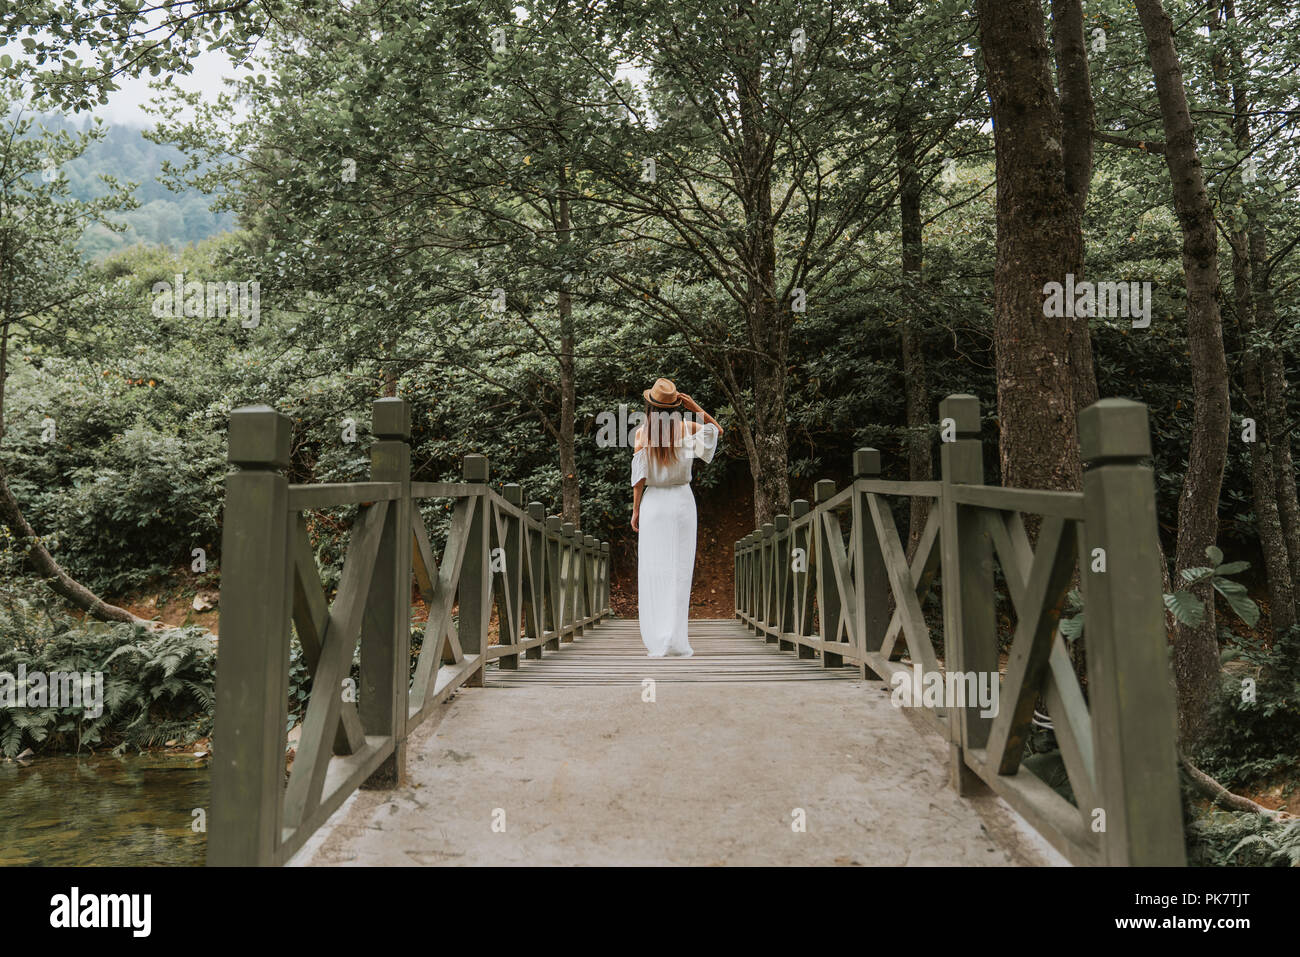 La femme avec chapeau et robe blanche debout sur pont de bois dans la nature. Banque D'Images